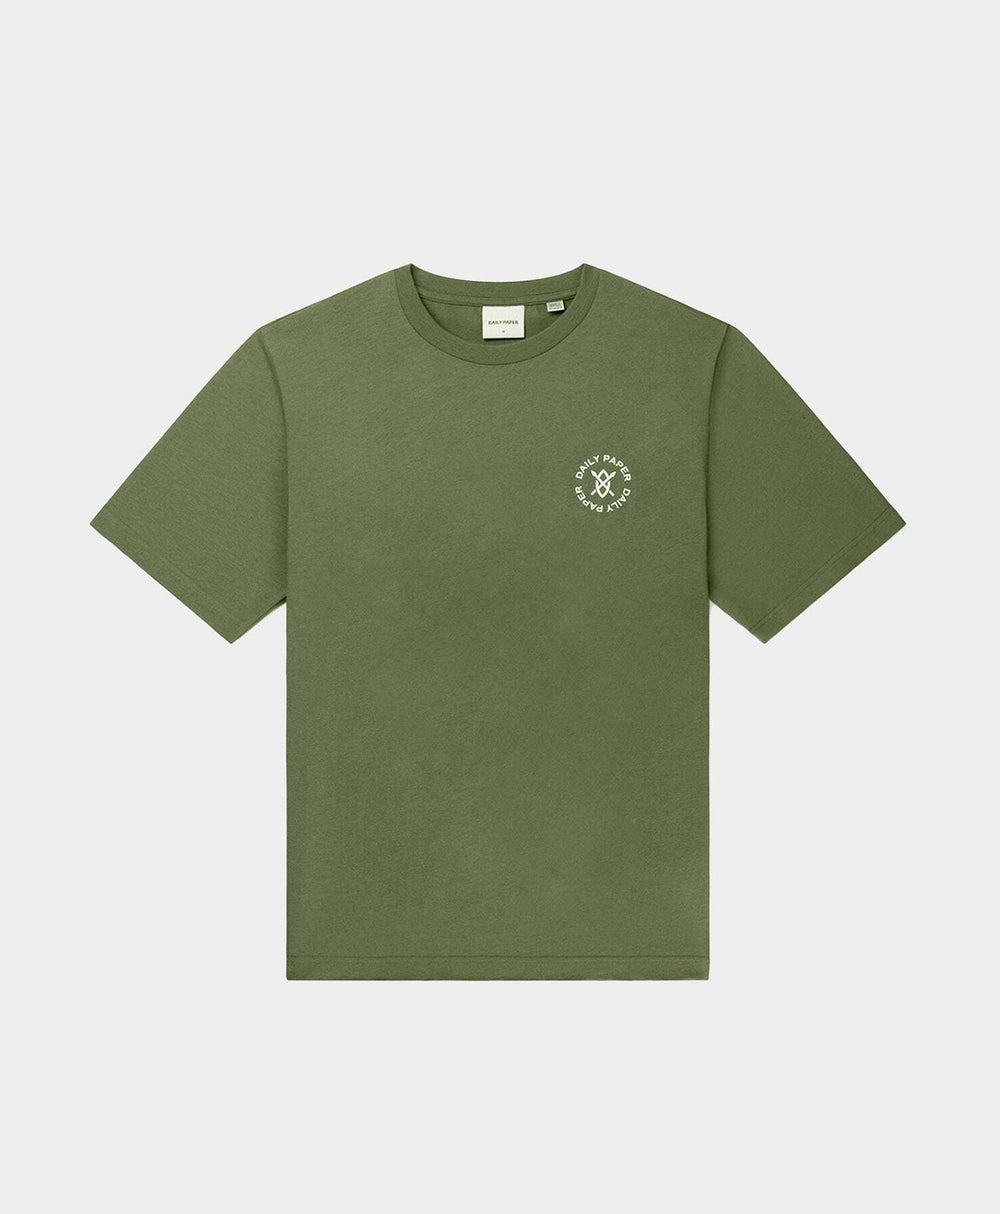 DP - Clover Green Circle T-Shirt - Packshot - Front